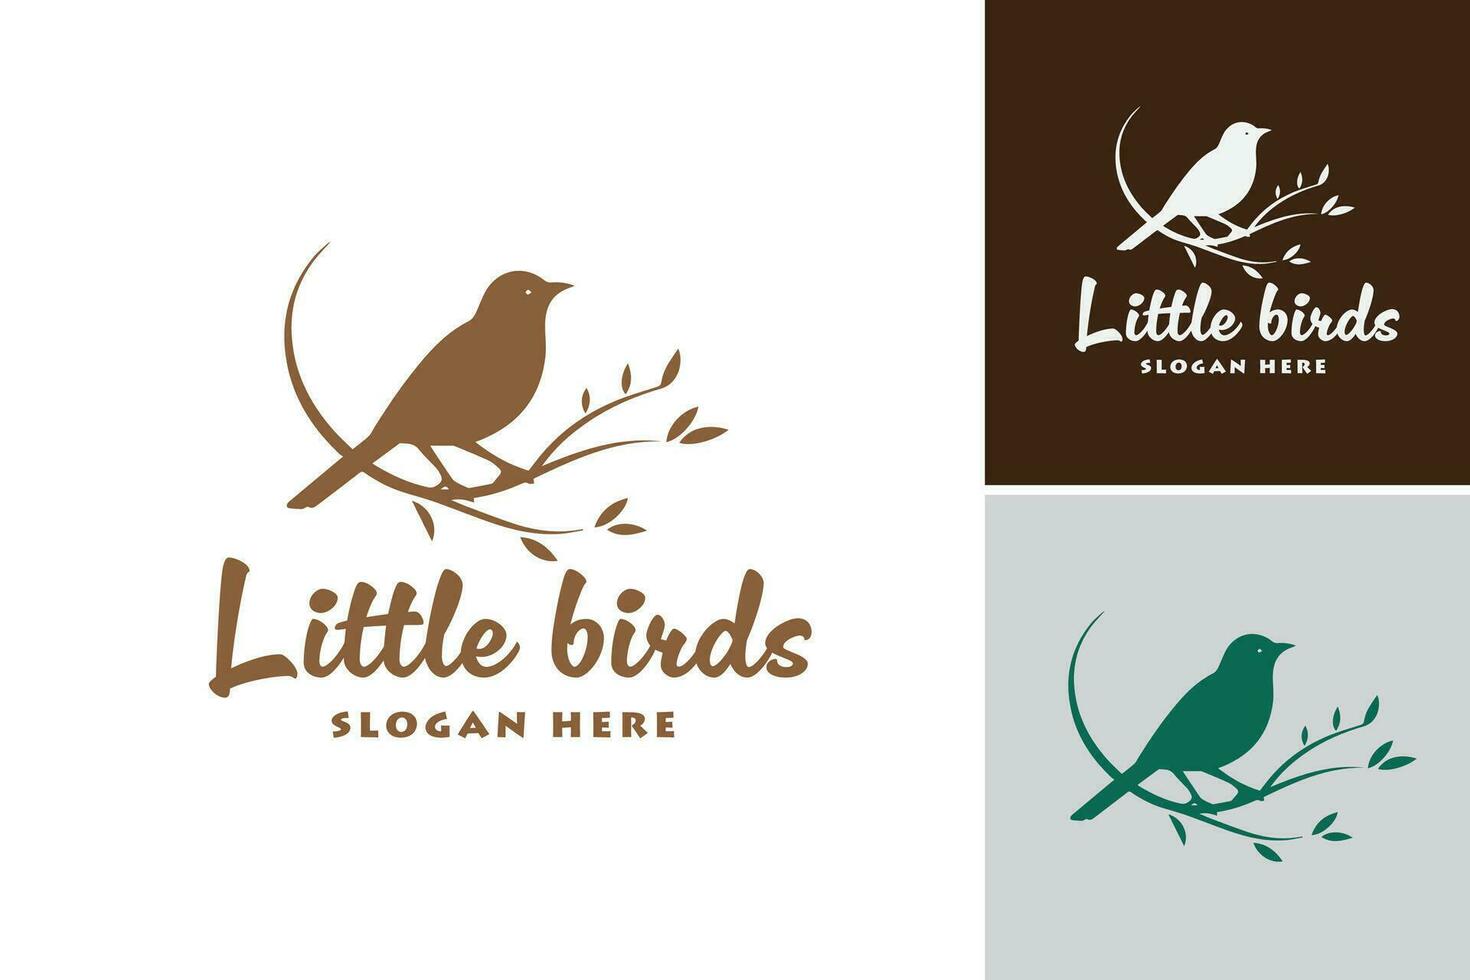 pequeño aves logo sugiere ese esta logo diseño activo es un logo presentando pequeño pájaro elementos. eso es adecuado para industrias relacionado a naturaleza, aves, o Respetuoso del medio ambiente marcas vector